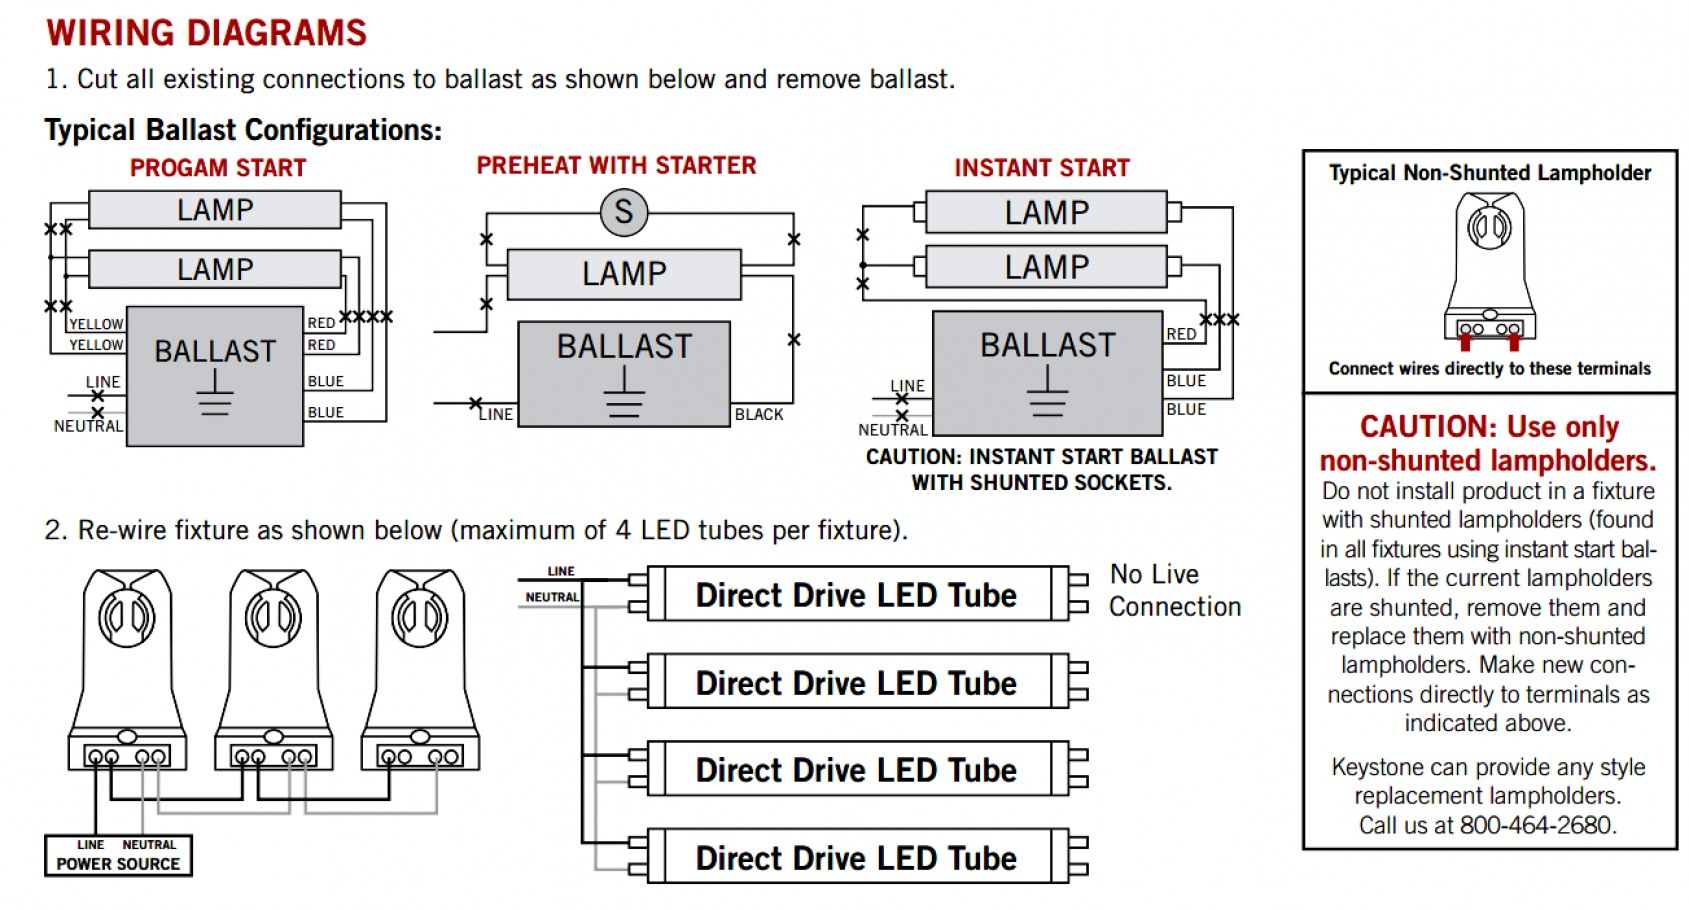 Led Tube 110 Wiring Diagram | Wiring Diagram - Wiring Diagram For Led Tube Lights